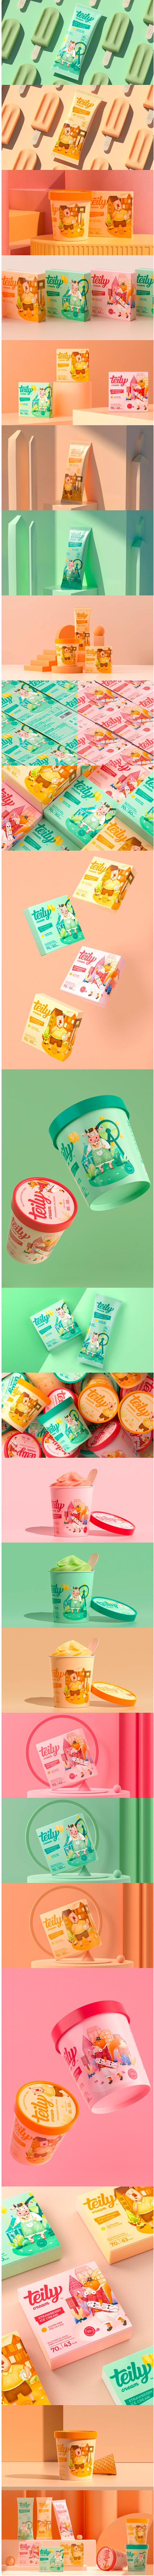 轻松快乐插画风的冰淇淋品牌包装设计